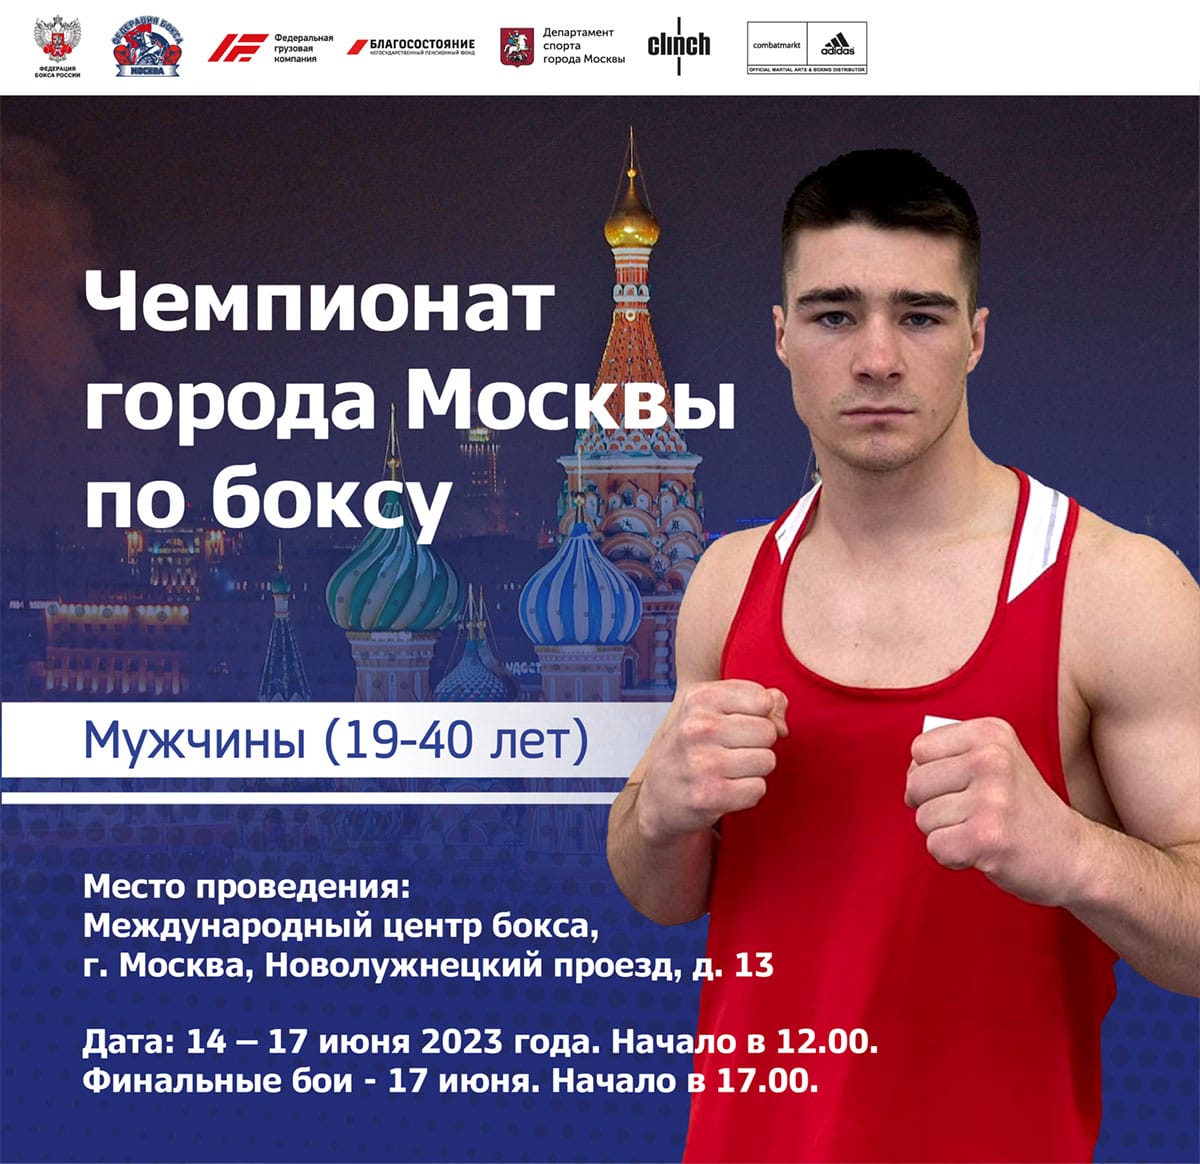 С 13 по 17 июня 2023г. пройдет чемпионат города Москвы по боксу среди мужчин 19-40 лет